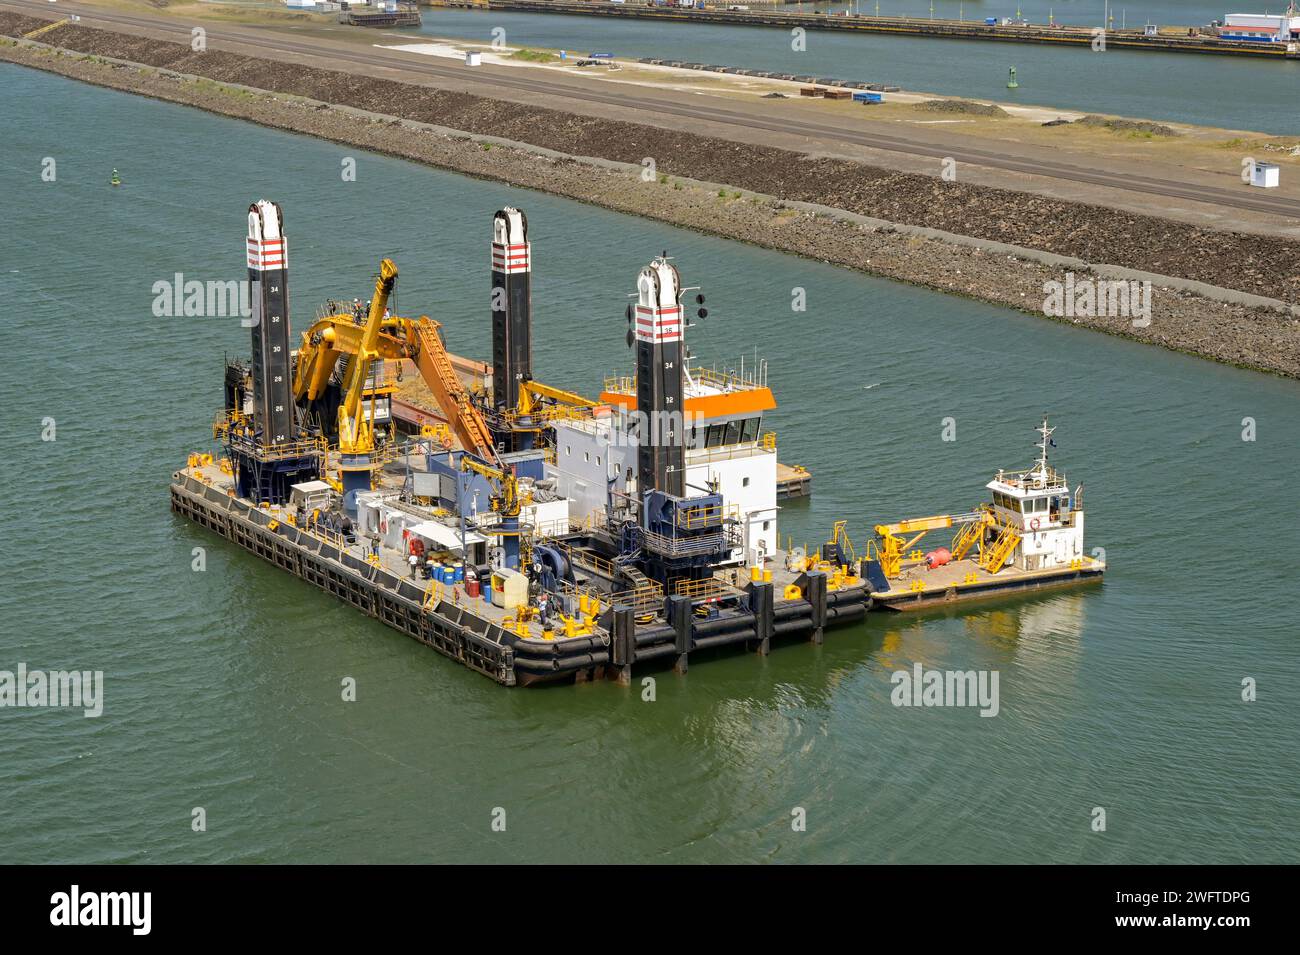 Canale di Panama, Panama - 23 gennaio 2024: Grande chiatta industriale galleggiante utilizzata per dragare il canale per rimuovere limo e sporco. Foto Stock